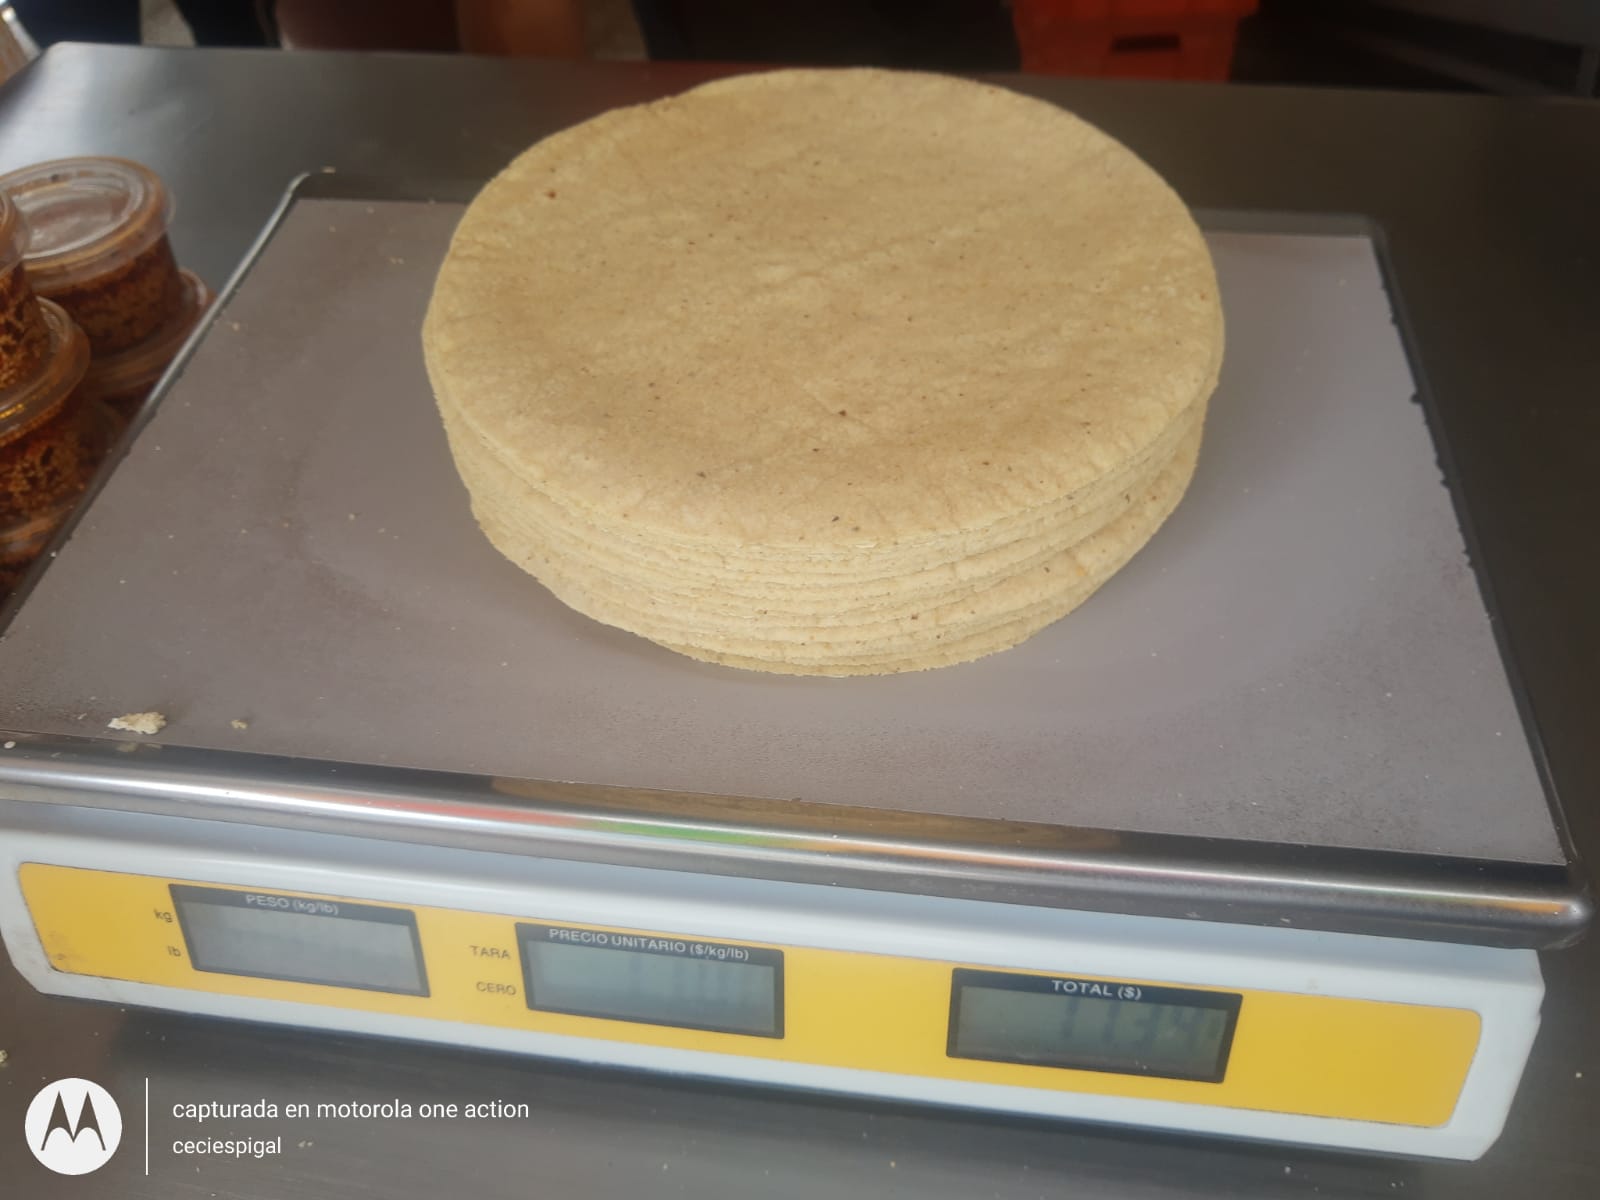 Confirman aumento al precio de la tortilla en la región de Texmelucan